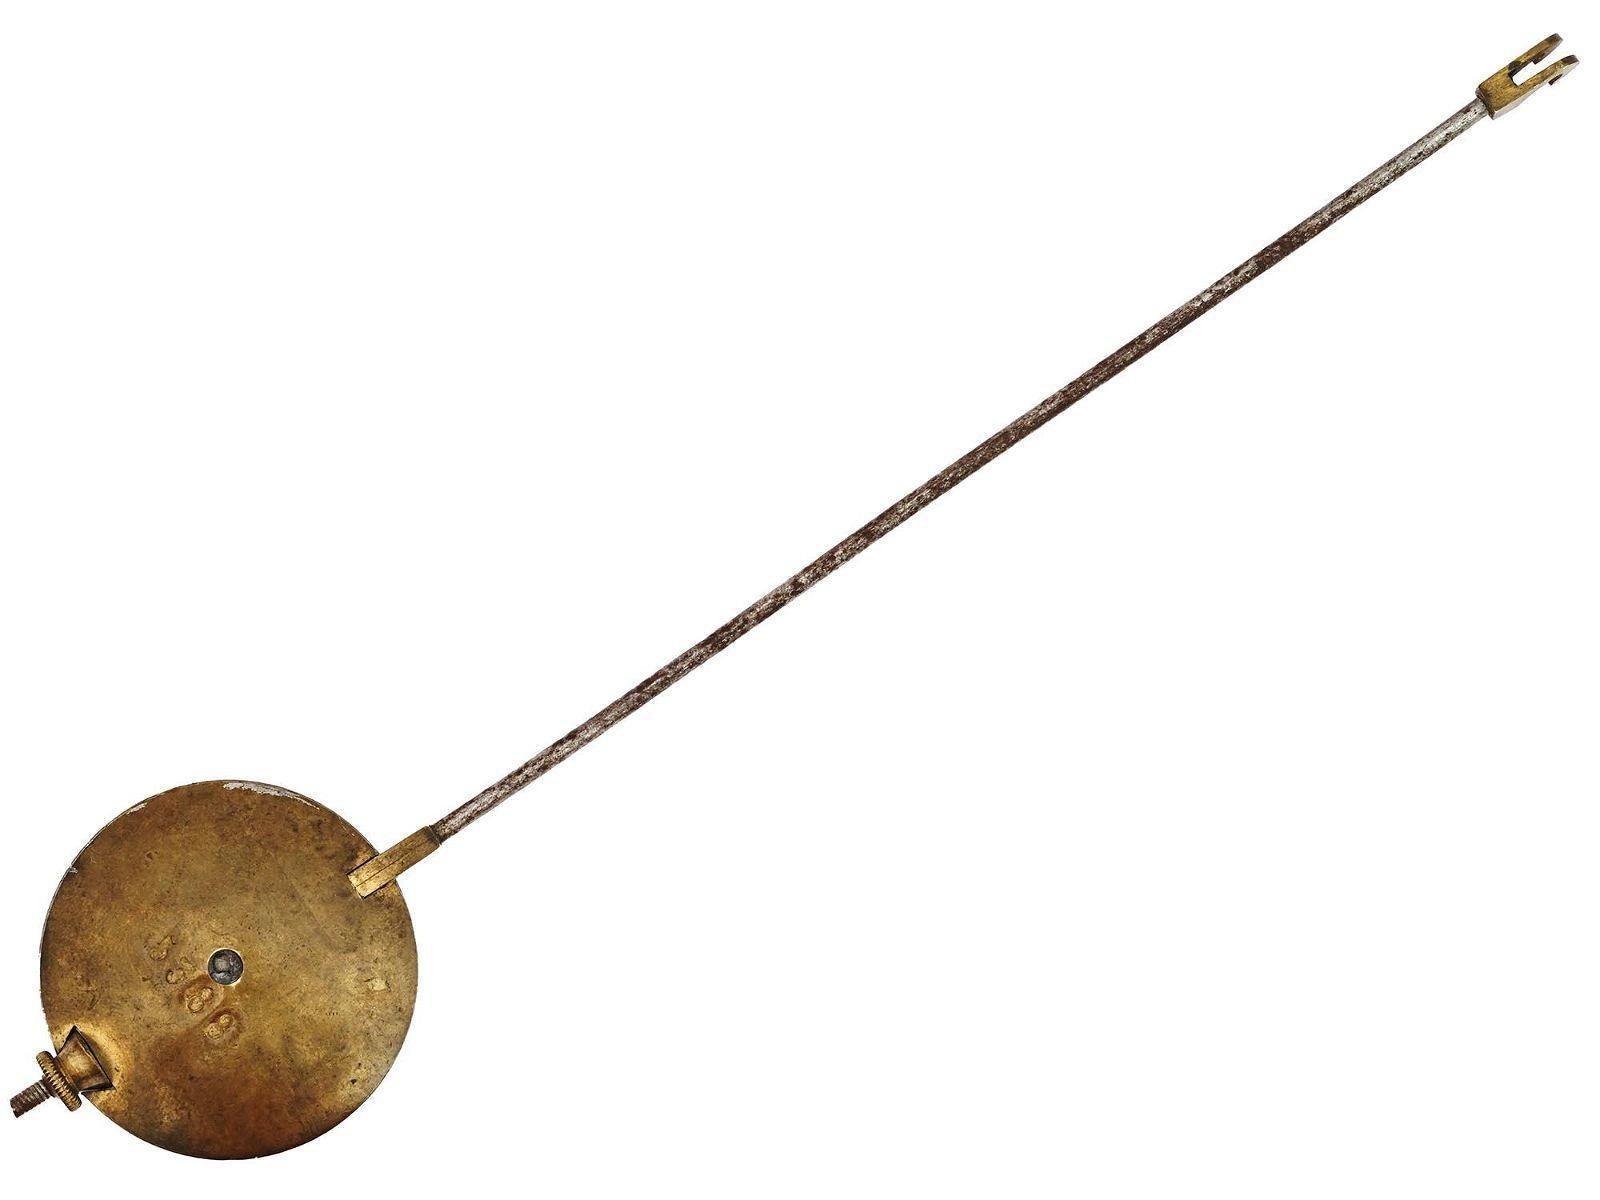 Pendule de cheminée ancienne (XIXe siècle) en bronze doré, finement sculptée et coulée, de style Renaissance, représentant d'élégants musiciens et musiciennes dans une allégorie de la musique.  Avec cloche de sonnerie et pendule d'origine.  